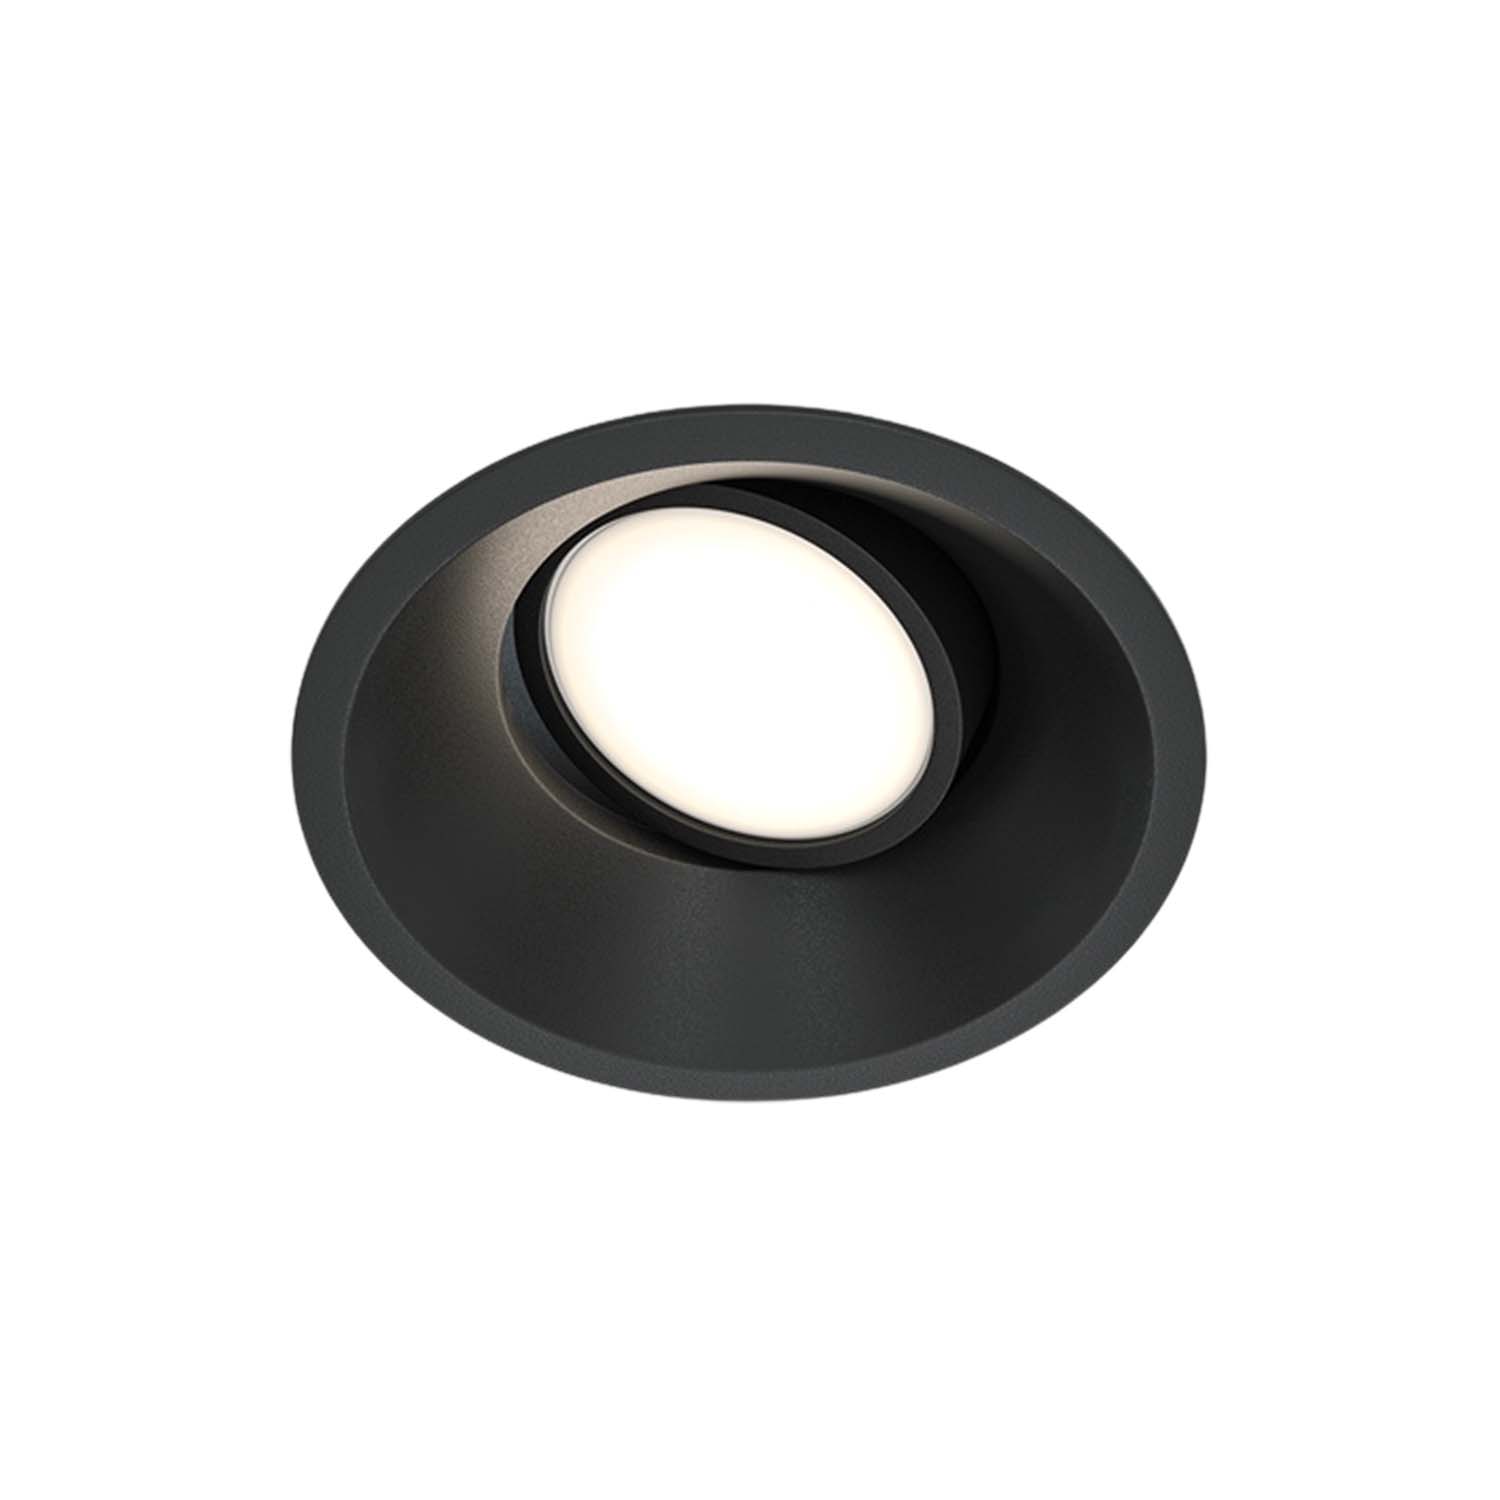 DOT – Moderner runder Einbaustrahler, schwarz oder weiß, 85 mm